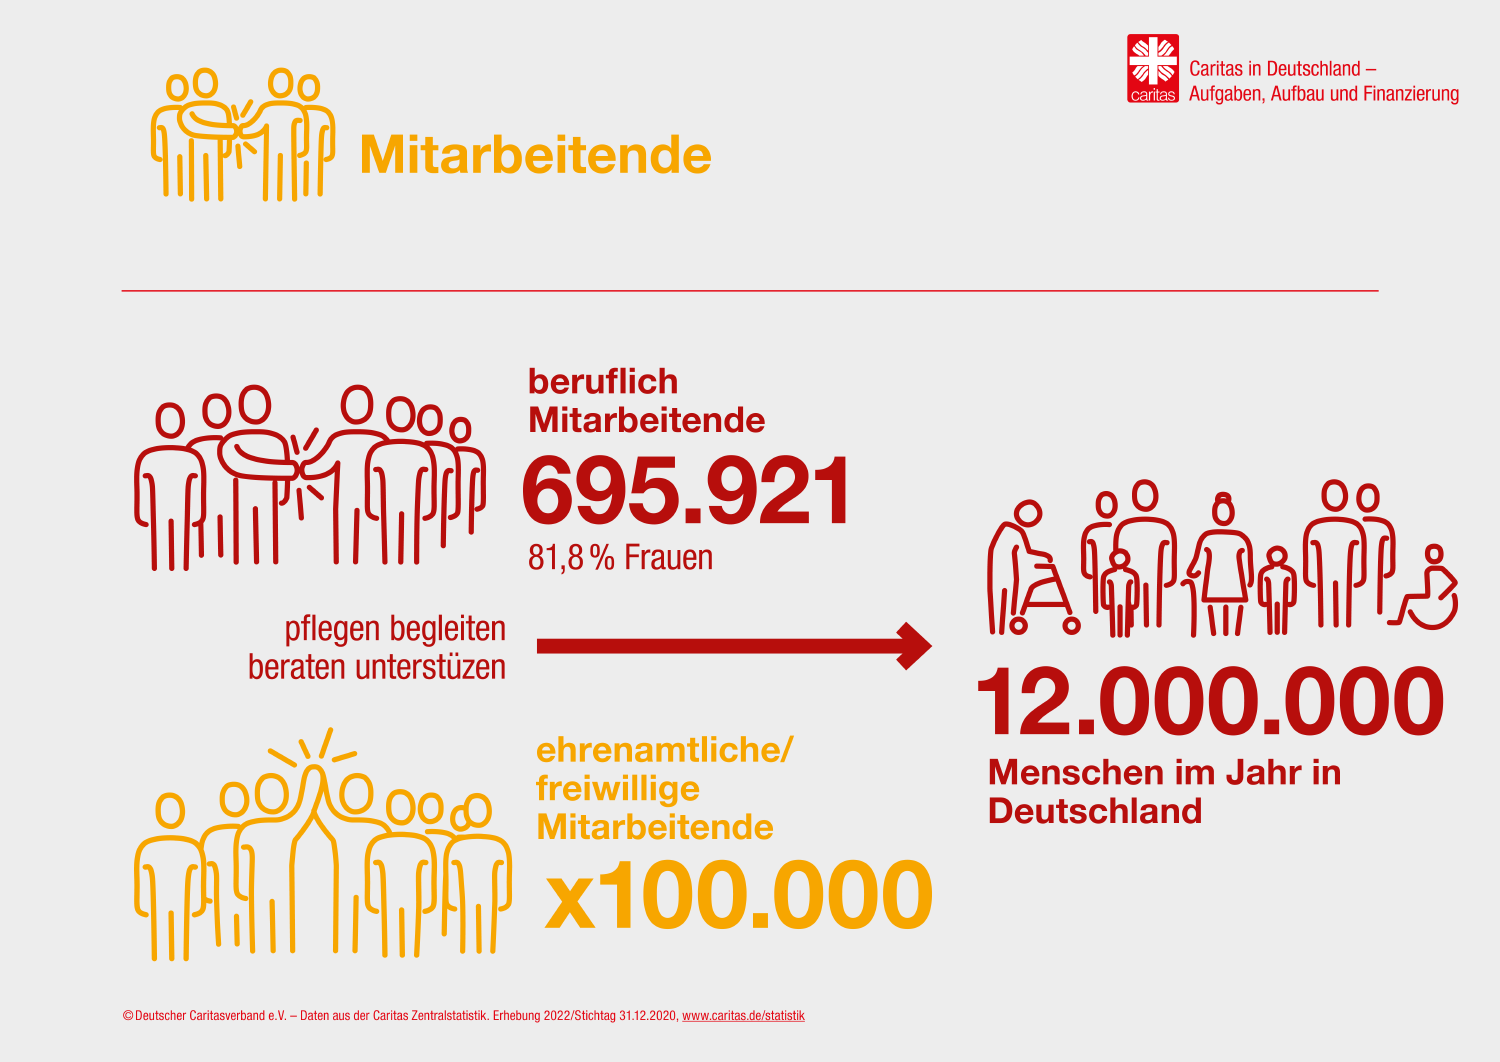 Infografik: Statistik zu den Mitarbeitenden der Caritas in Deutschland (DCV/margo Kommunikationsdesign)